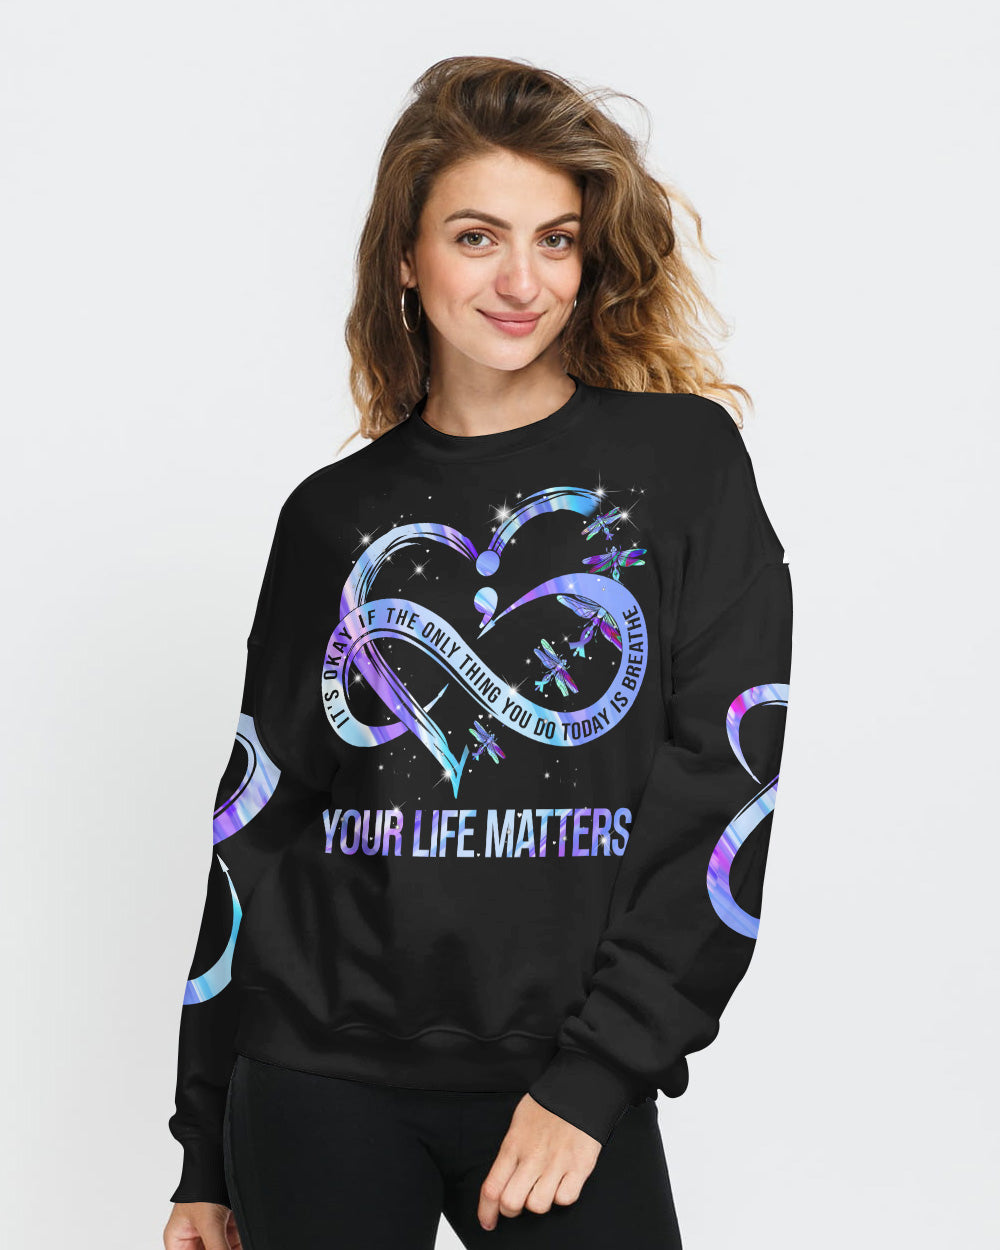 Your Life Matters Suicide Prevention Awareness Women's Suicide Awareness Sweatshirt